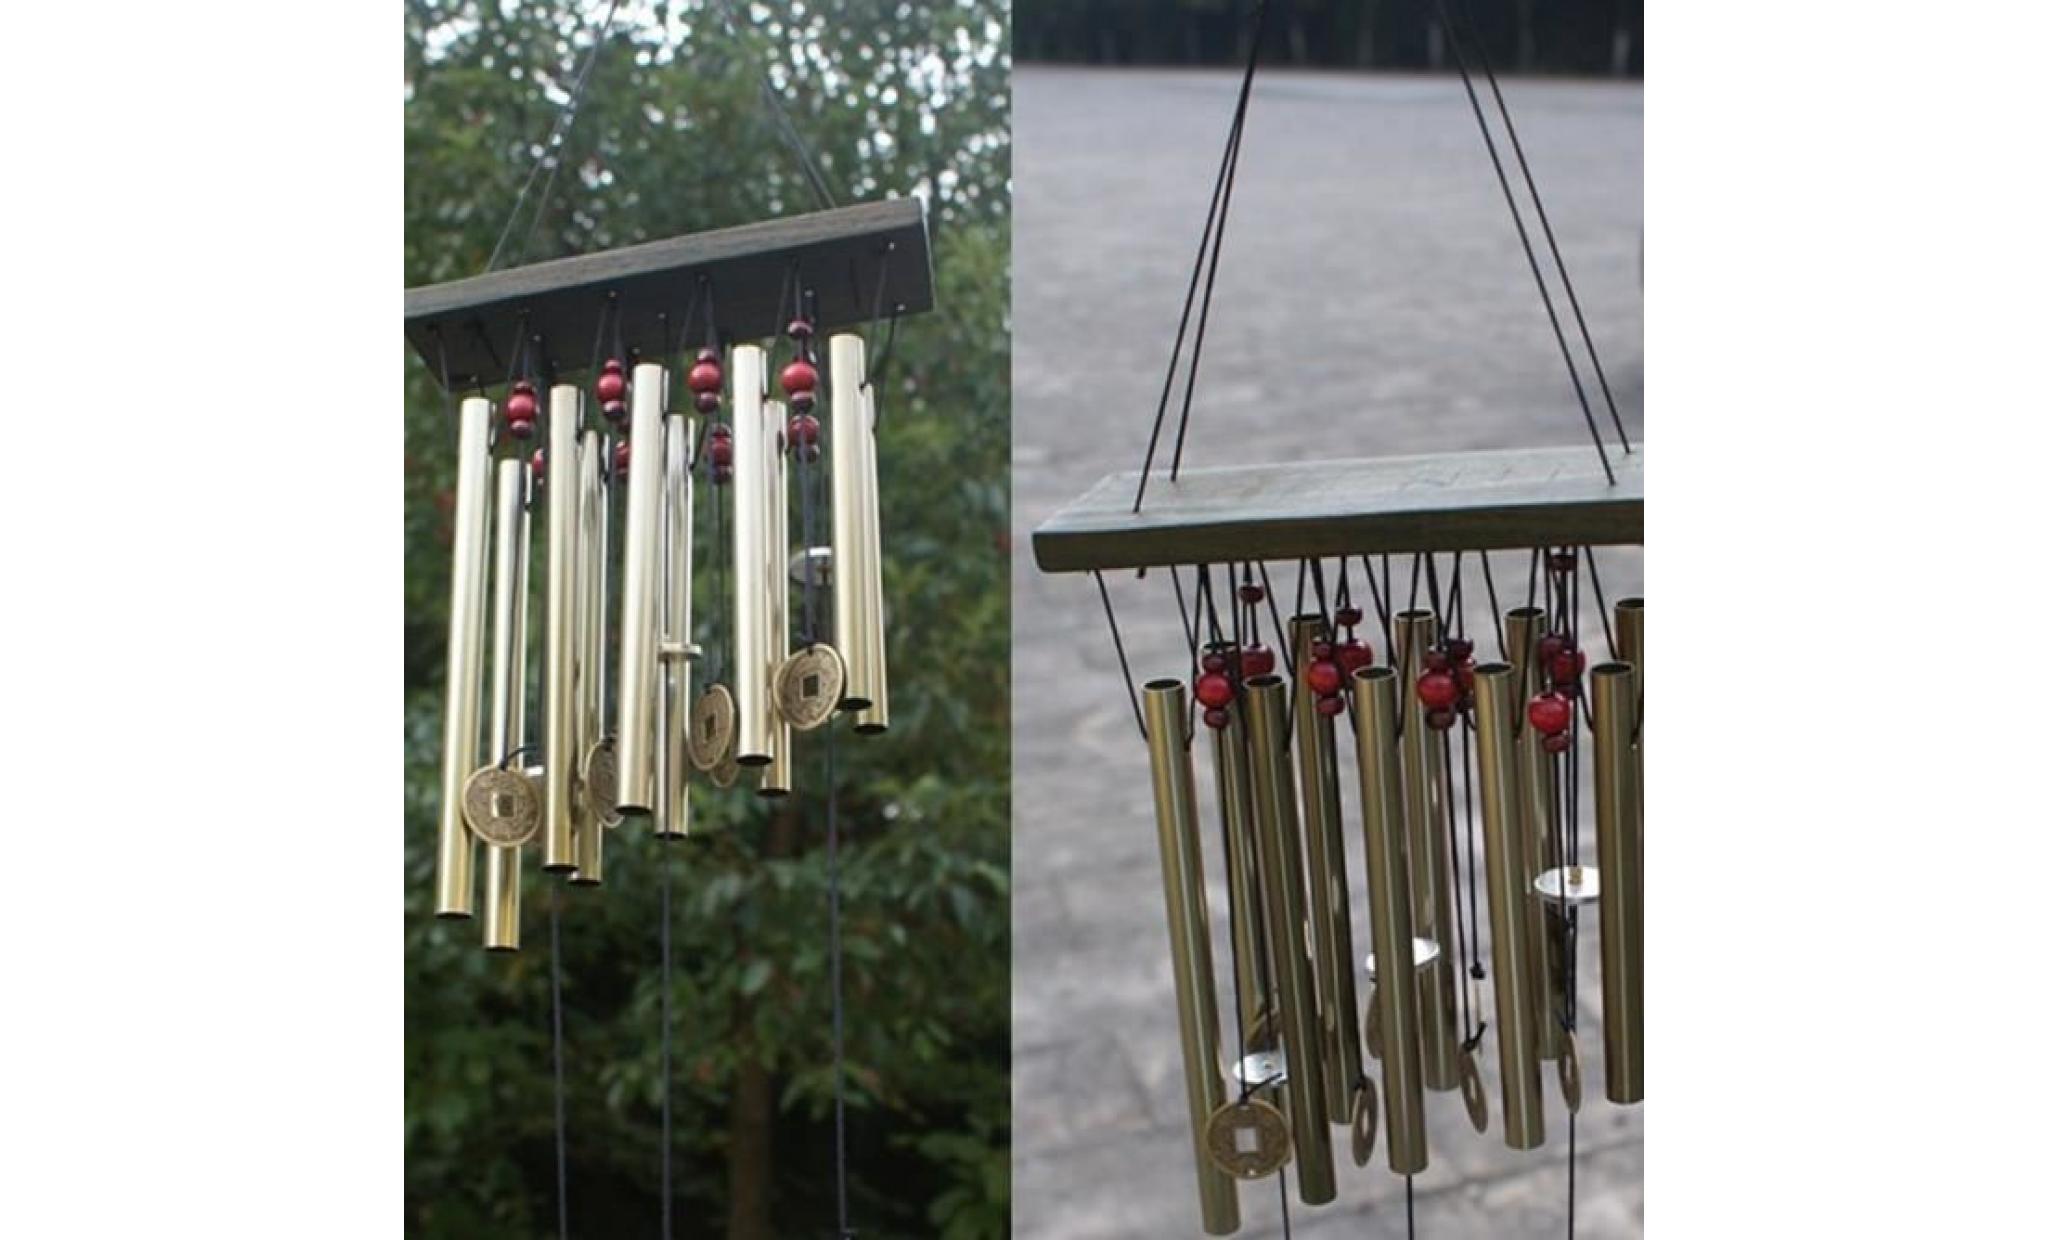 incroyable 10 tubes bois chapelle eglise clochons carillons de vent decor wh@cff60621410